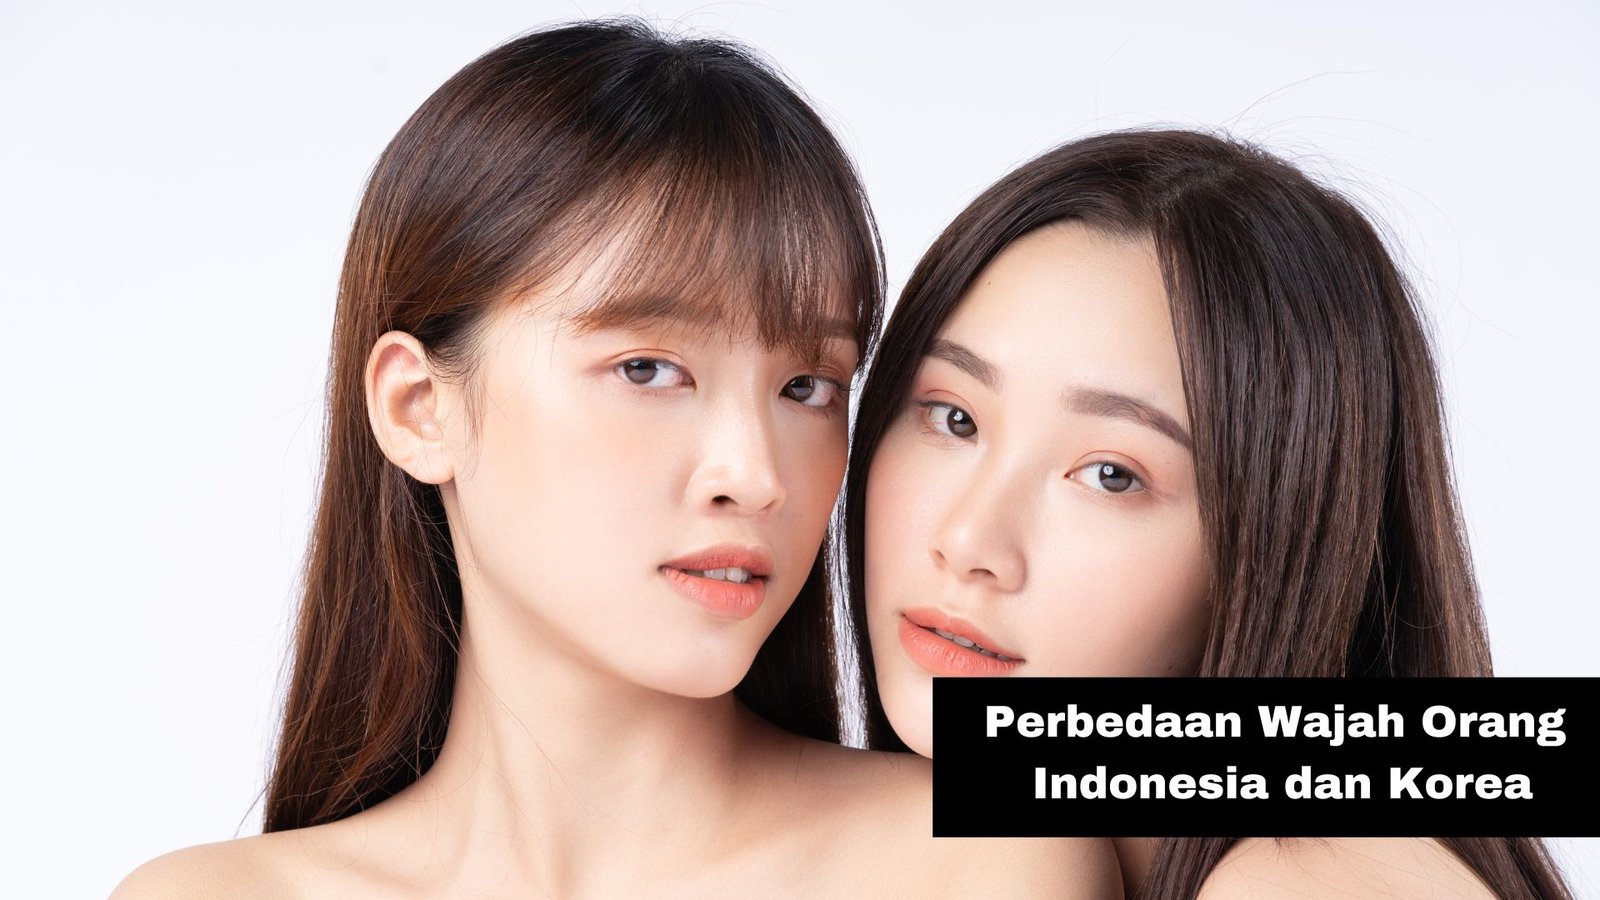 Perbedaan Wajah Orang Indonesia dan Korea